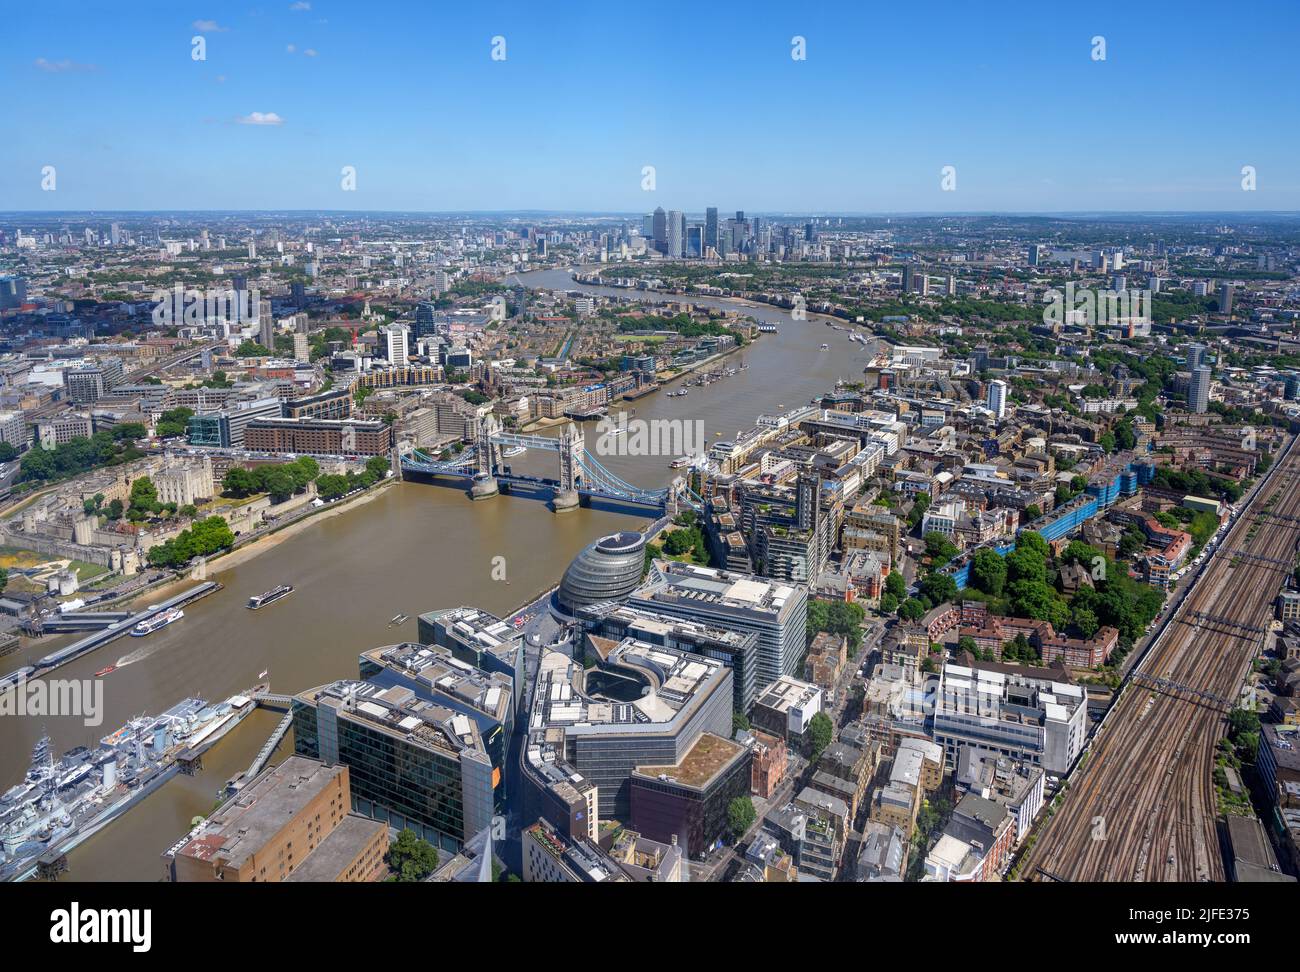 Londres. Vue aérienne sur Londres, en direction de Tower Bridge, depuis la Shard Viewing Gallery, Londres, Angleterre, Royaume-Uni Banque D'Images